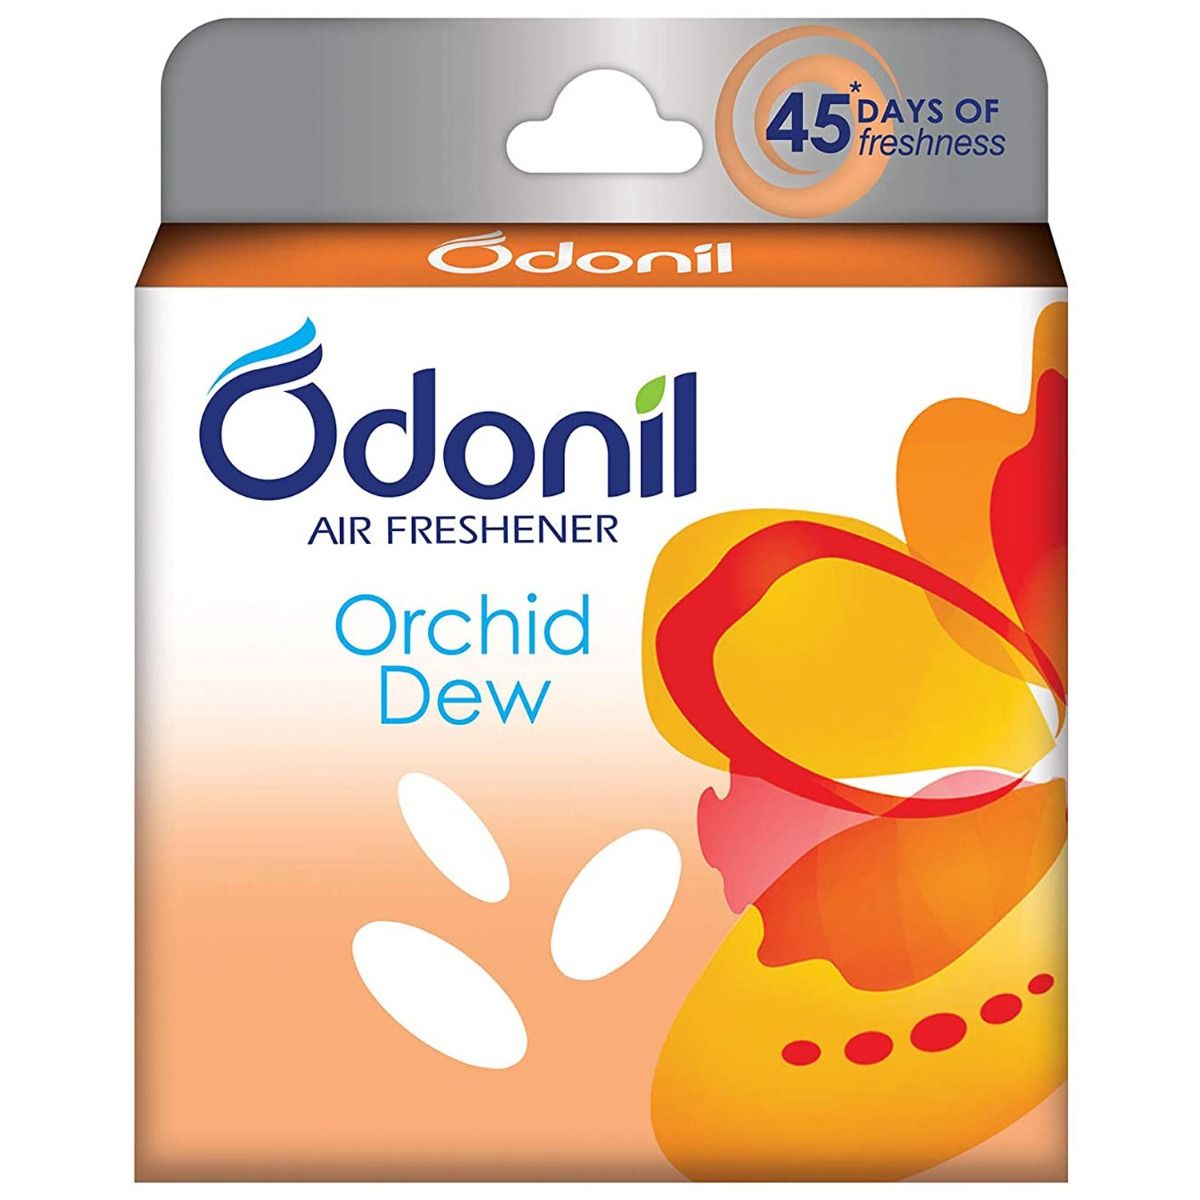 Buy Odonil Orchid Dew Air Freshner, 75 gm Online